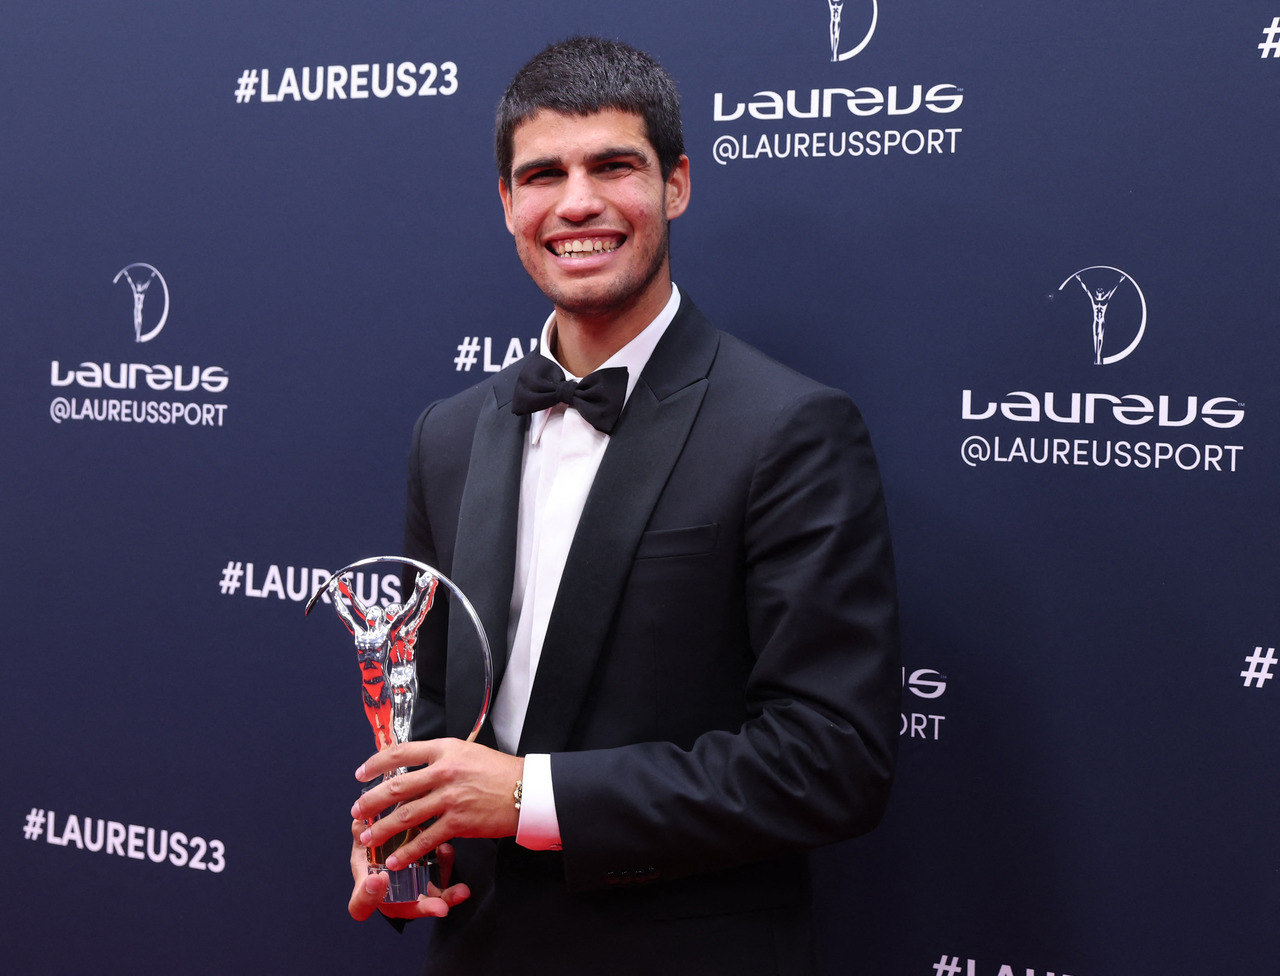 Alcaraz recebe o troféu de Nº 1 do ano: 'Significa muito para mim' -  Esportes - R7 Lance